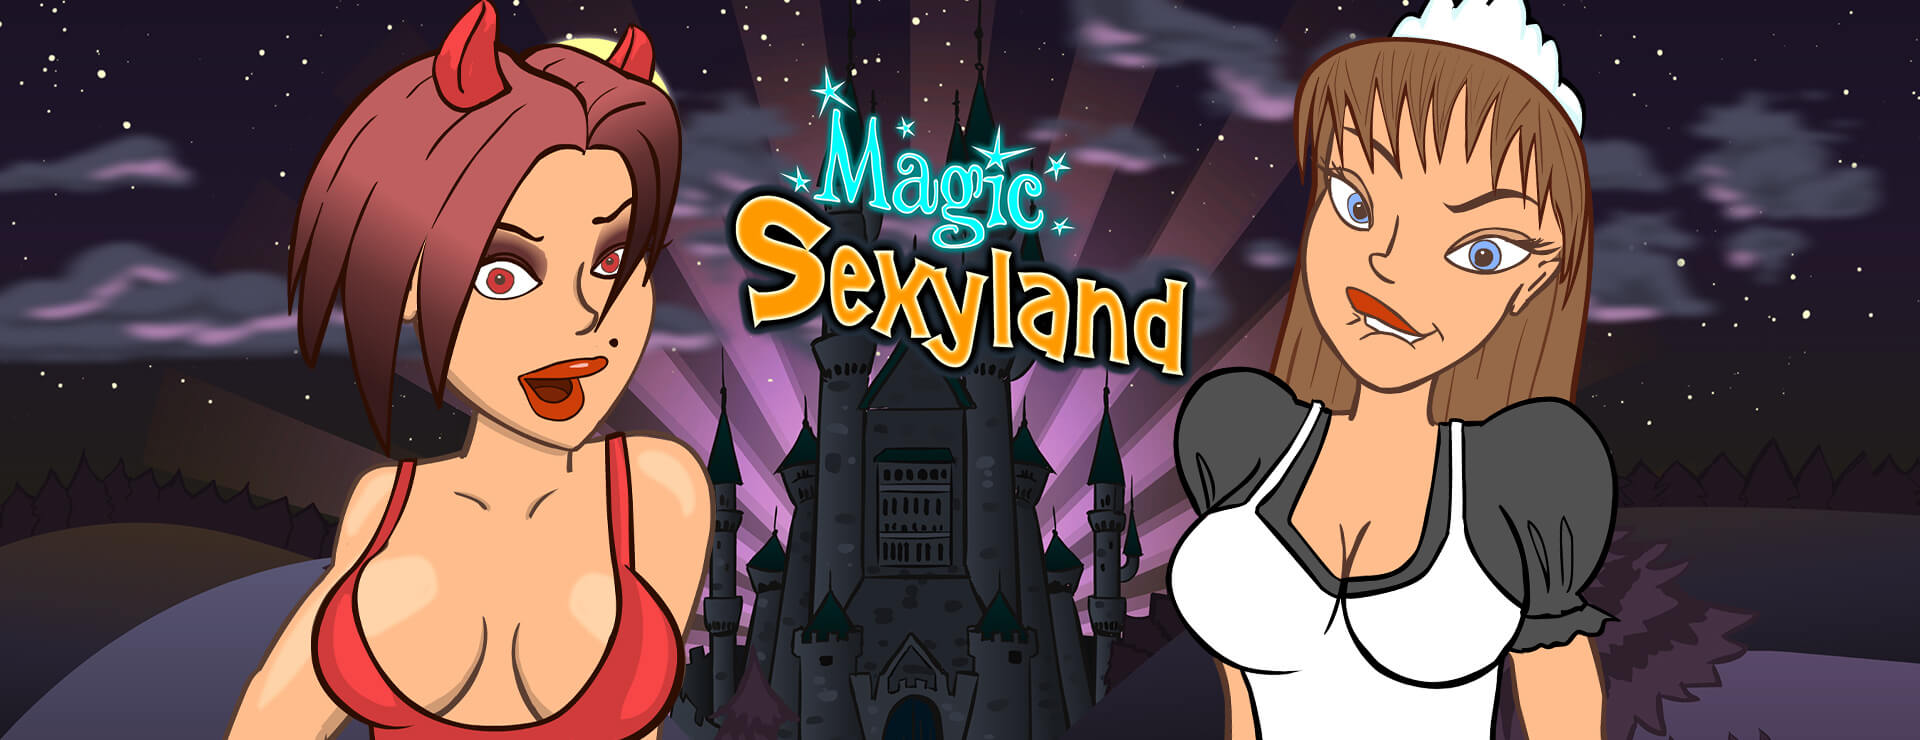 Magic Sexyland - Zwanglos  Spiel